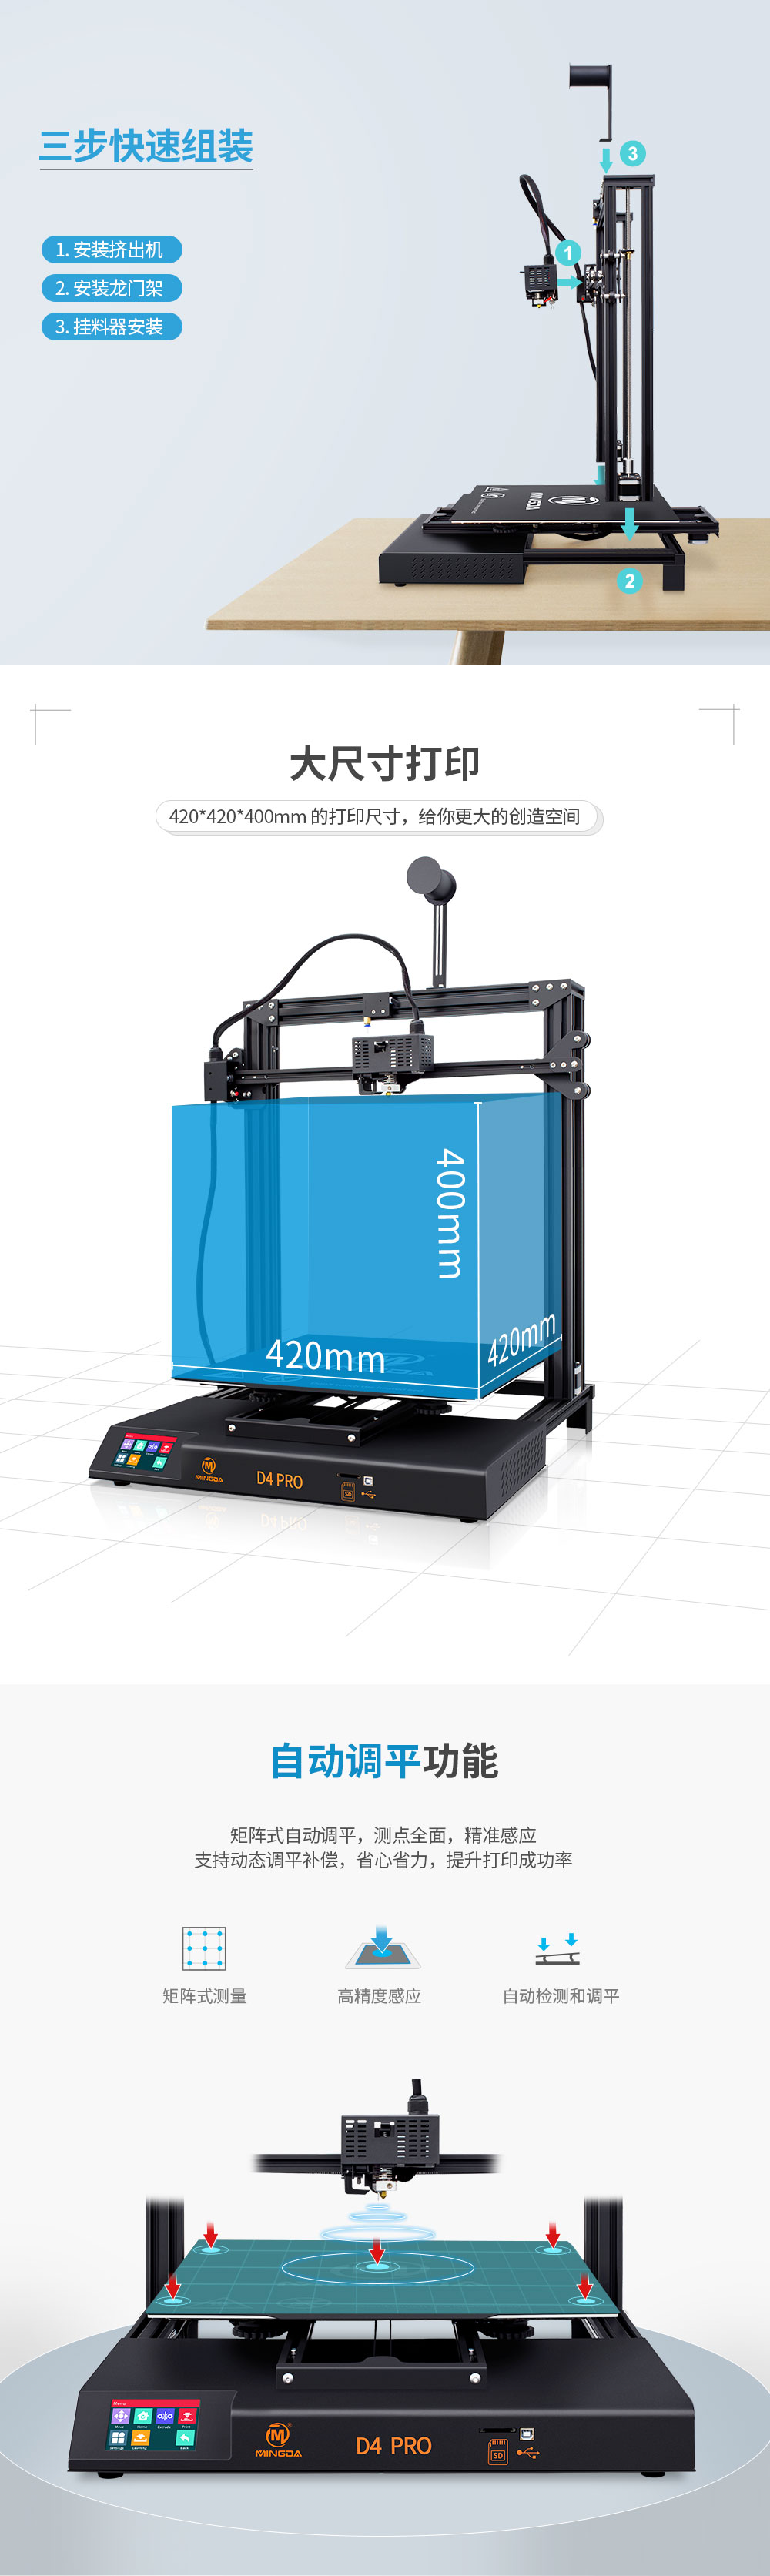 新品重磅上市| D4 PRO 大尺寸3D打印机(图2)